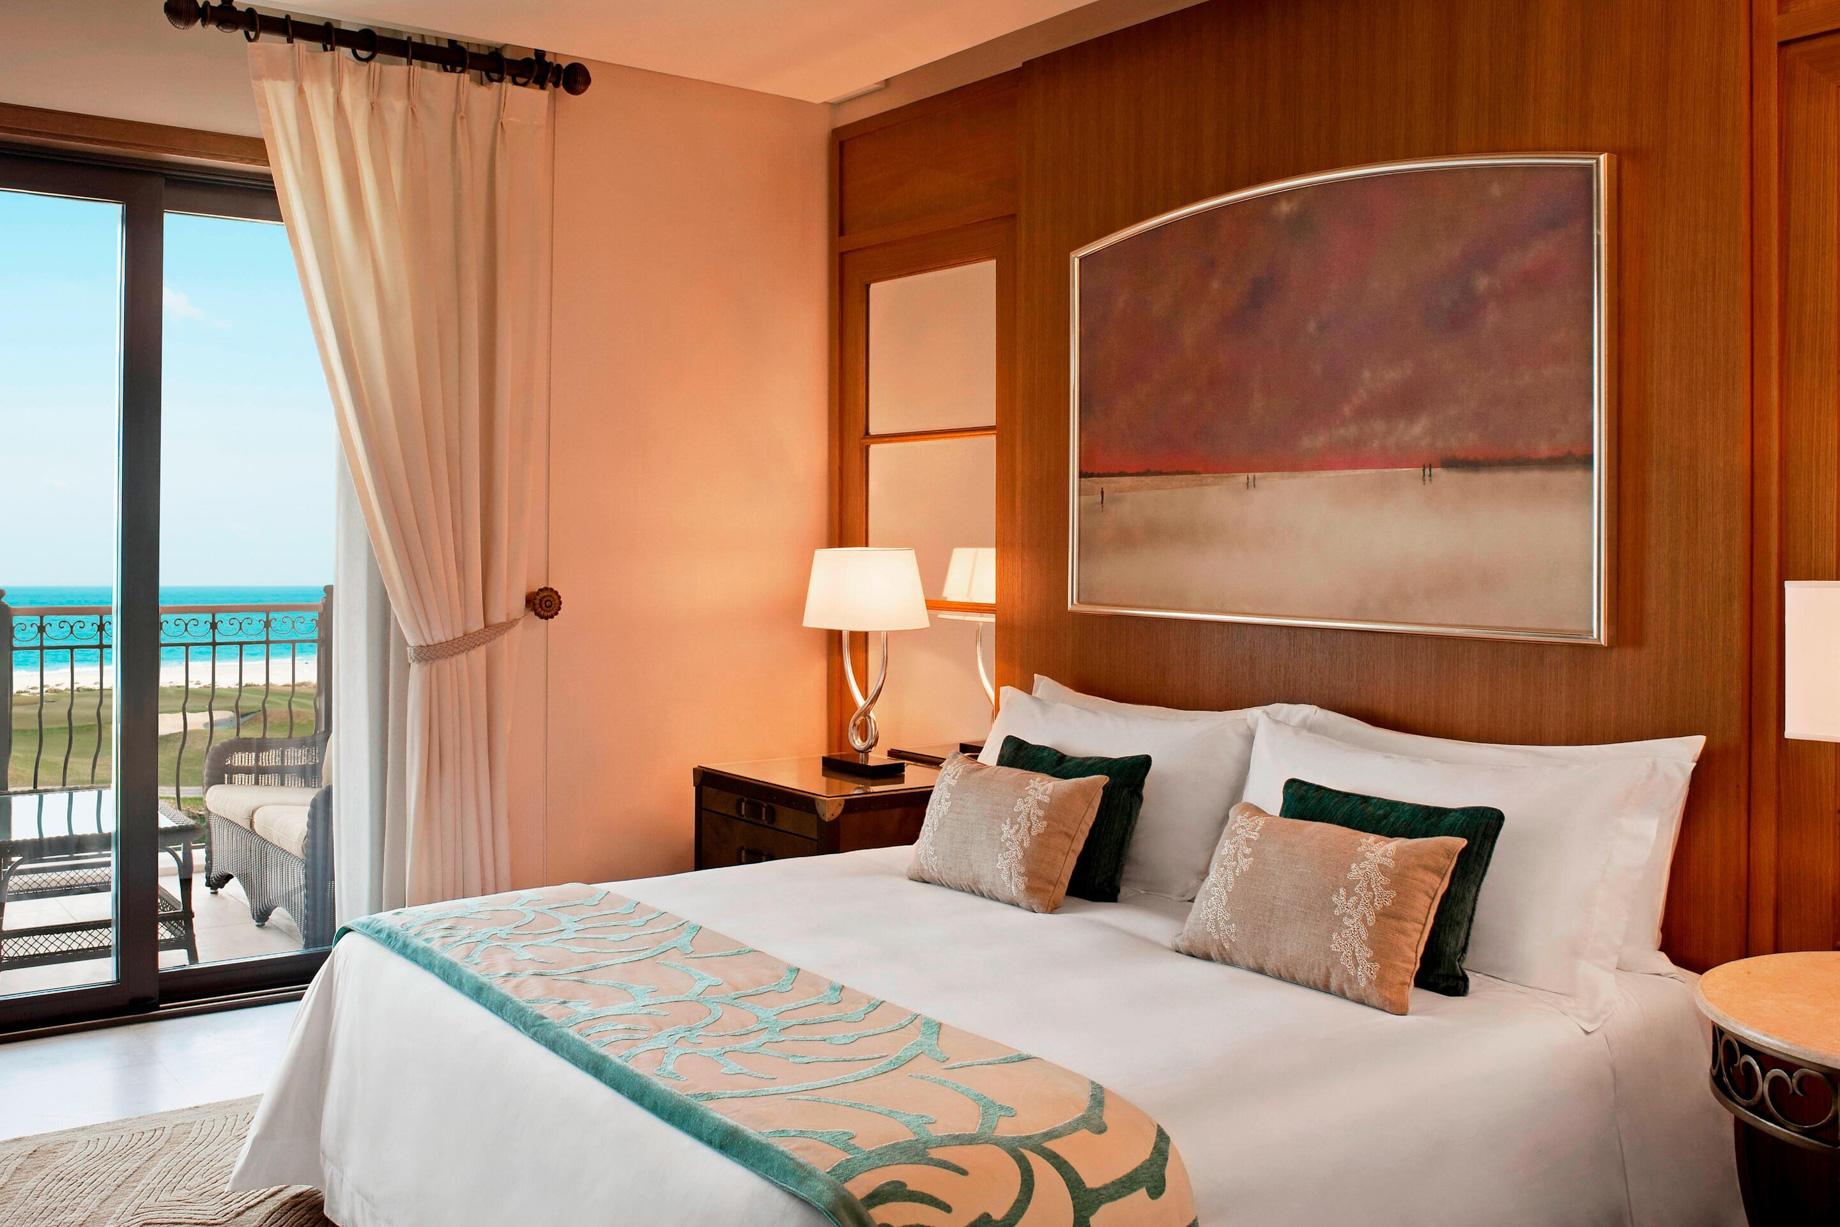 The St. Regis Saadiyat Island Resort – Abu Dhabi, UAE – Ocean Suite Bedroom Interior